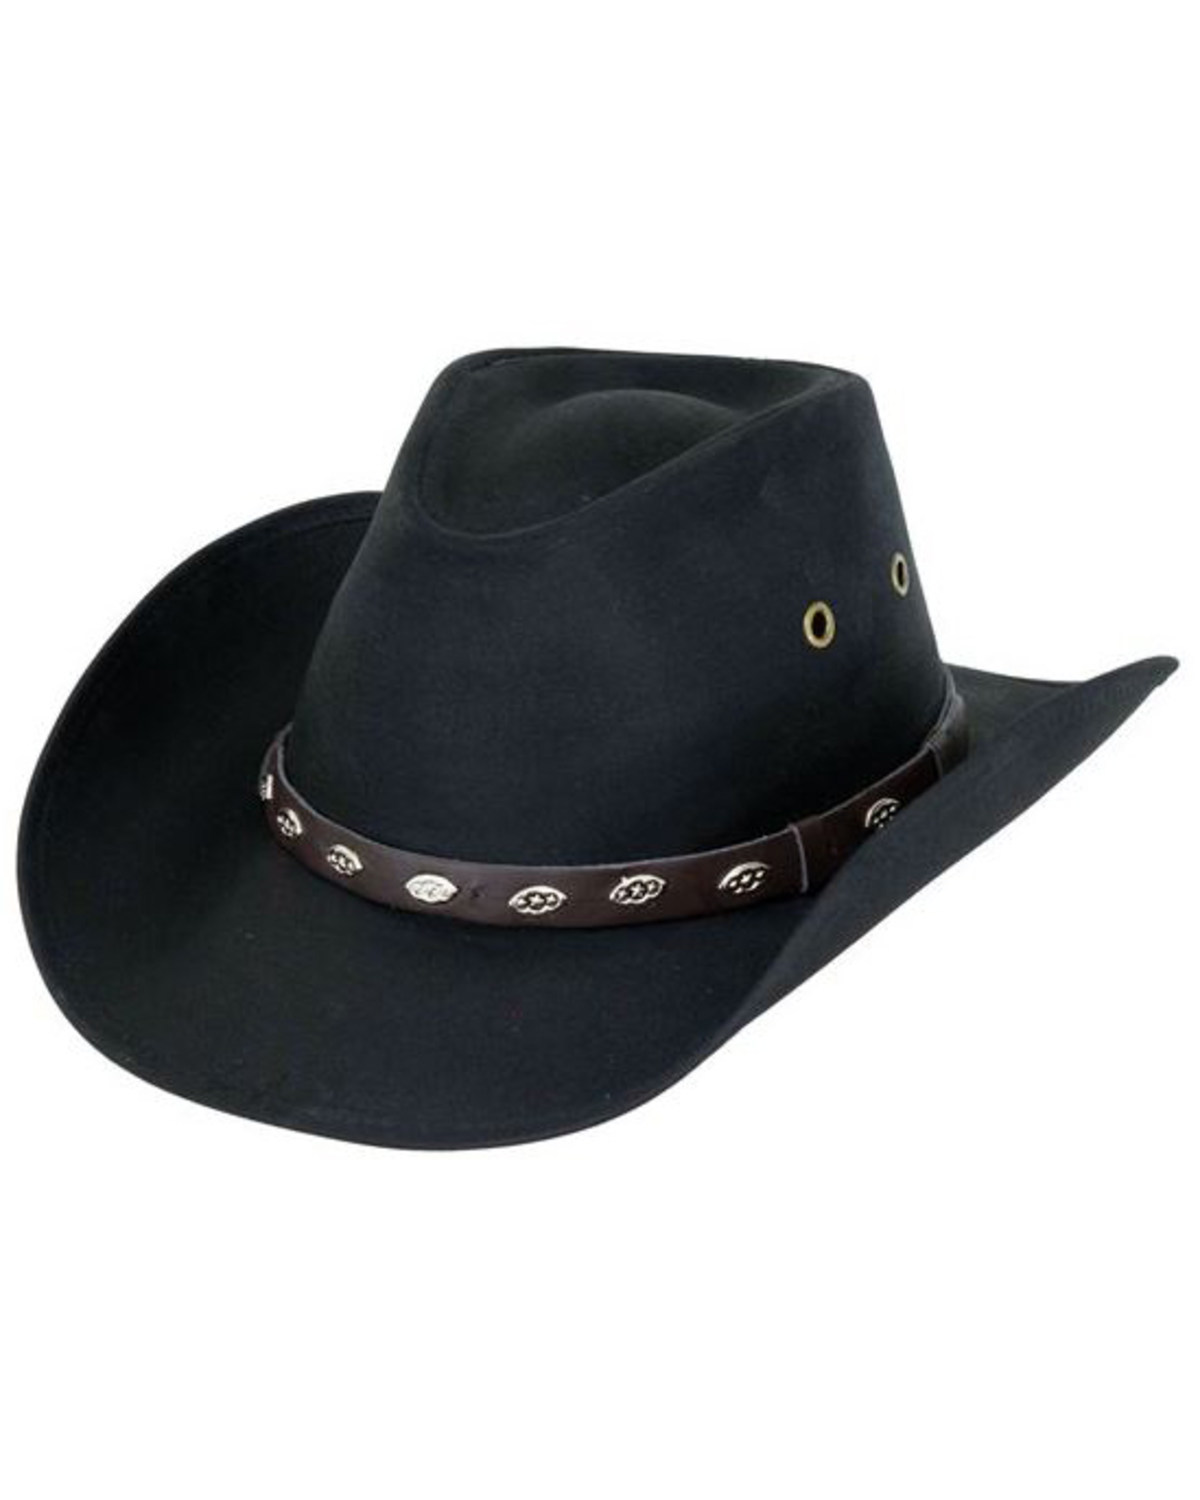 Outback Trading Co. Men's Badlands Oilskin Hat